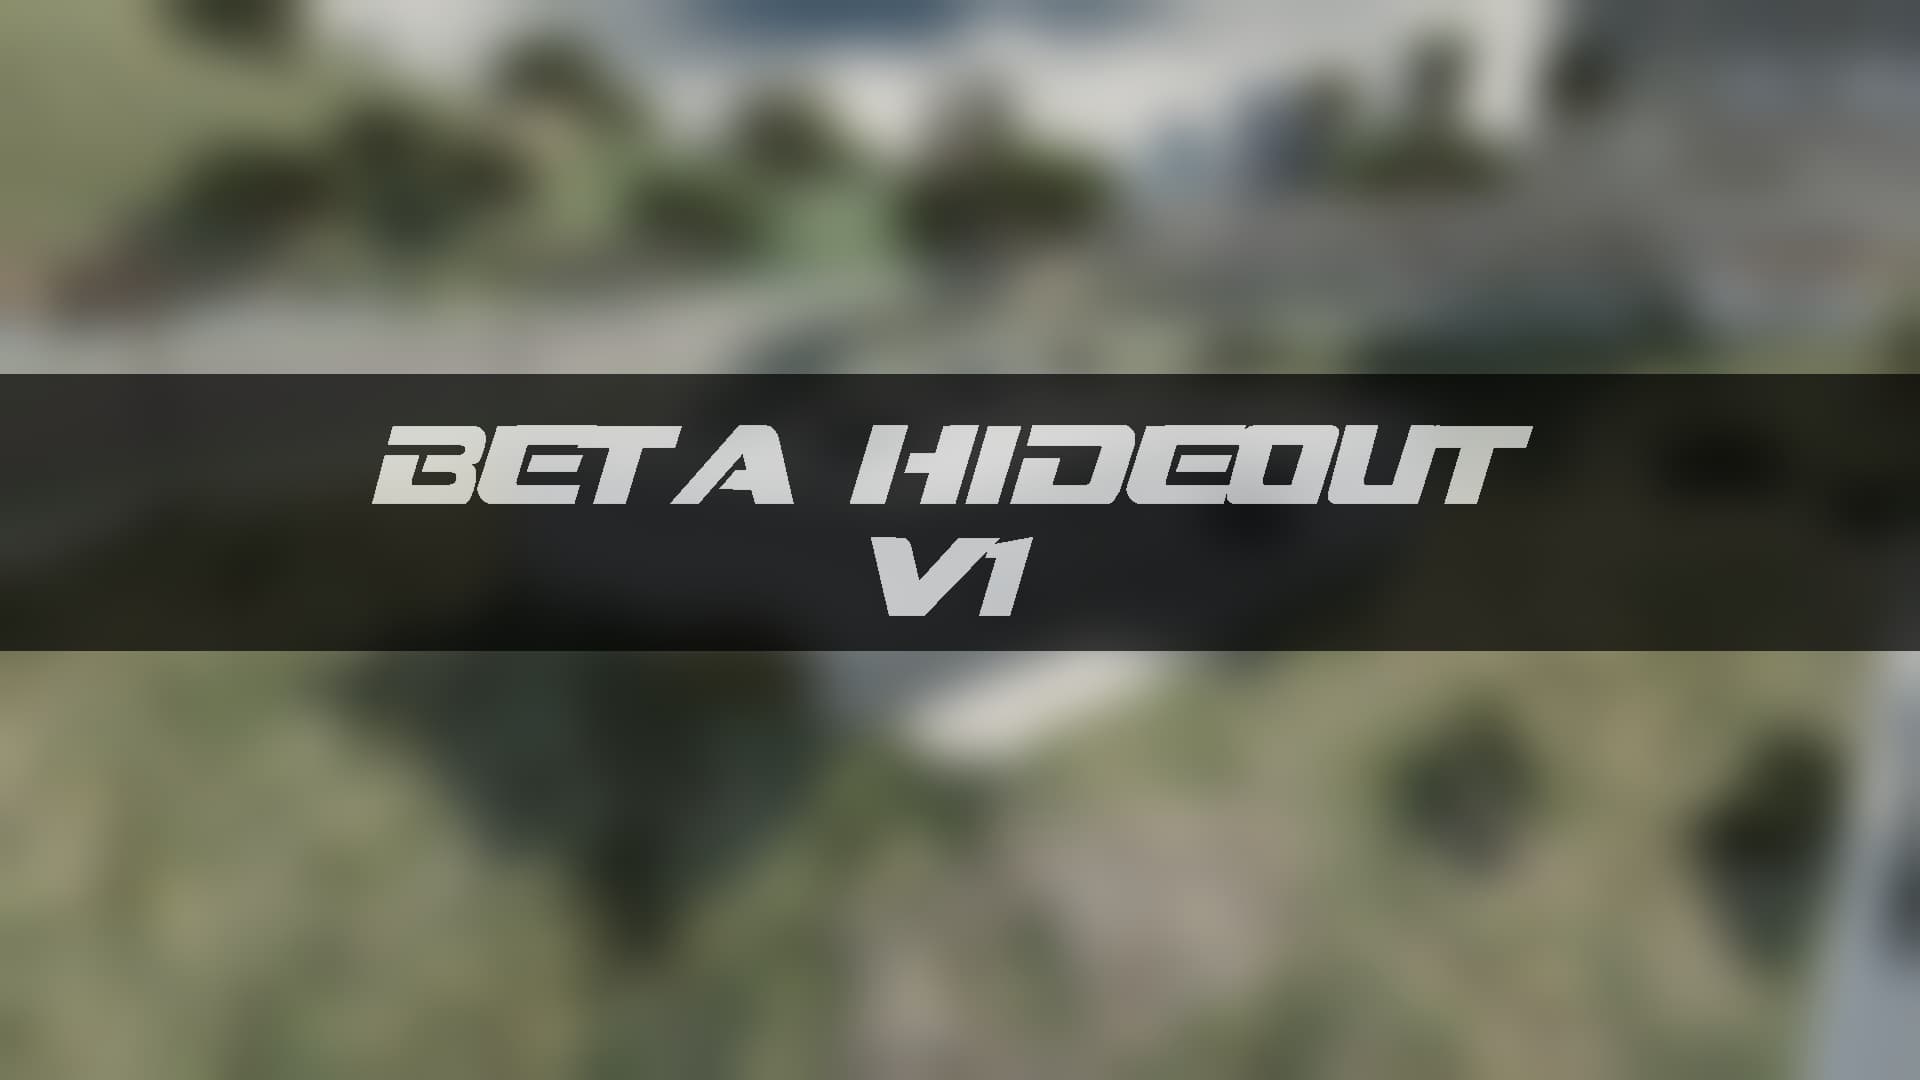 GTA III in GTA 5 BETA - Releases - Cfx.re Community